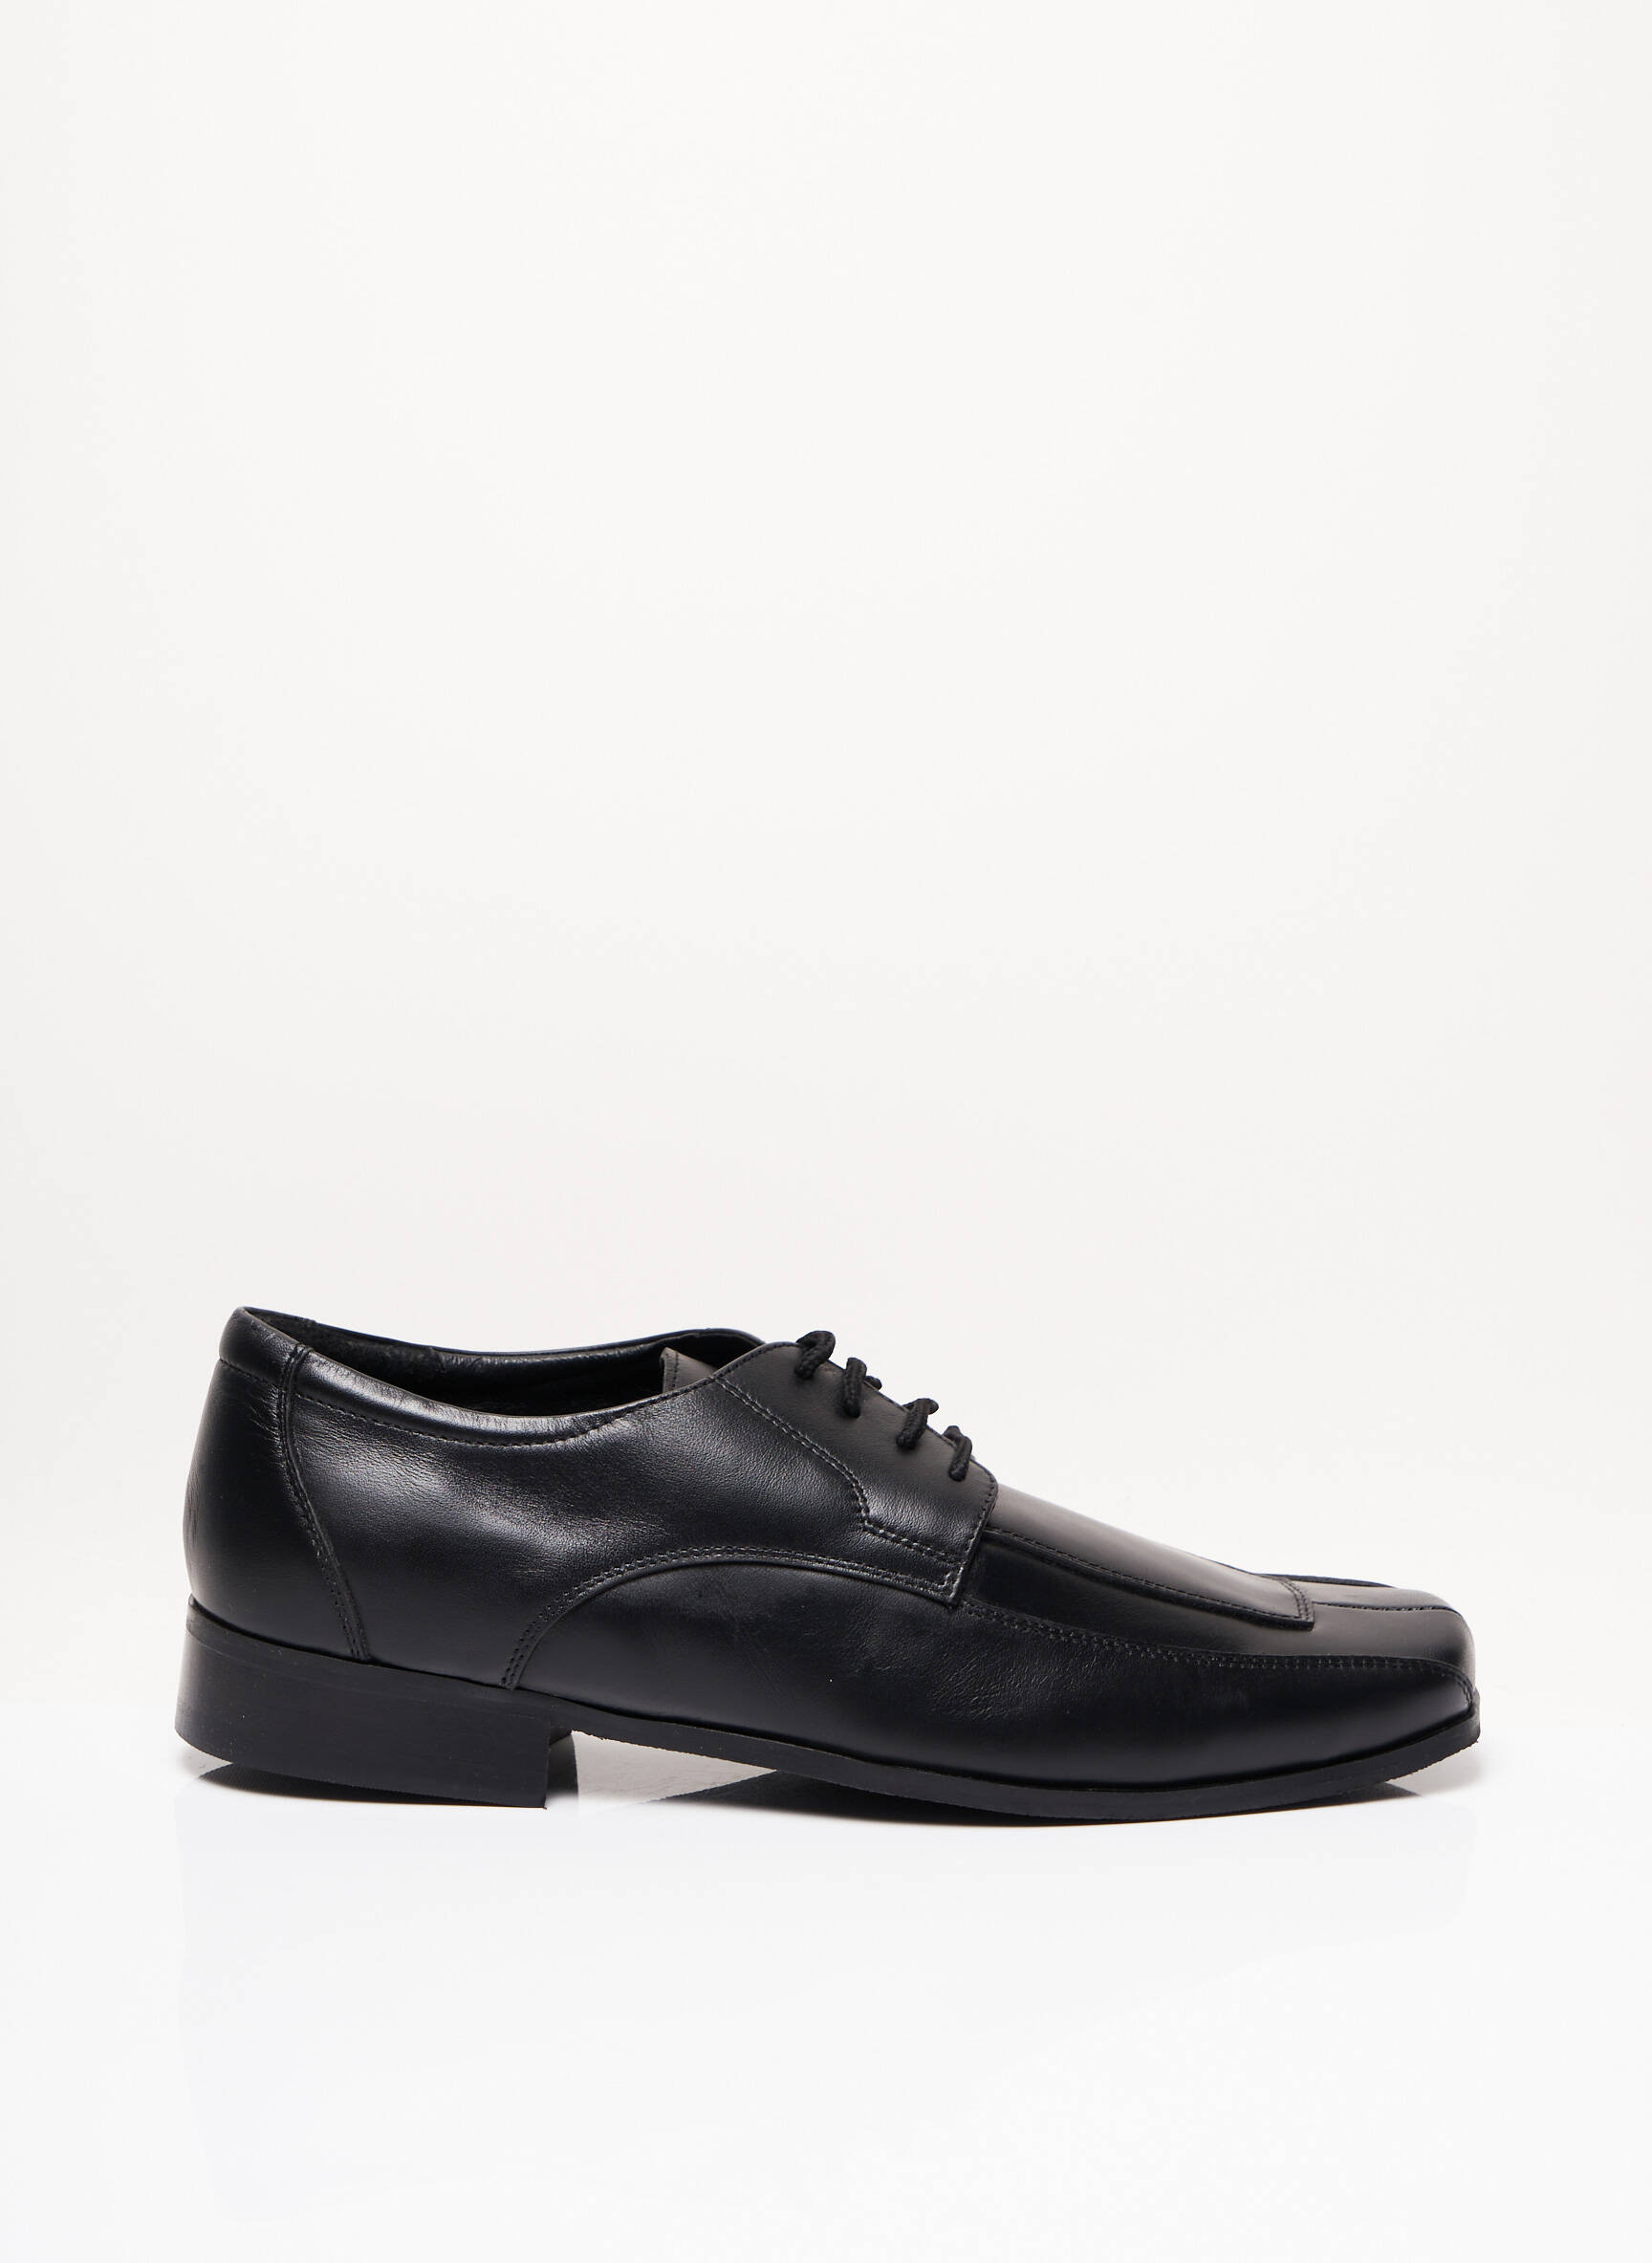 Selected Homme - Chaussures derby en cuir - Noir